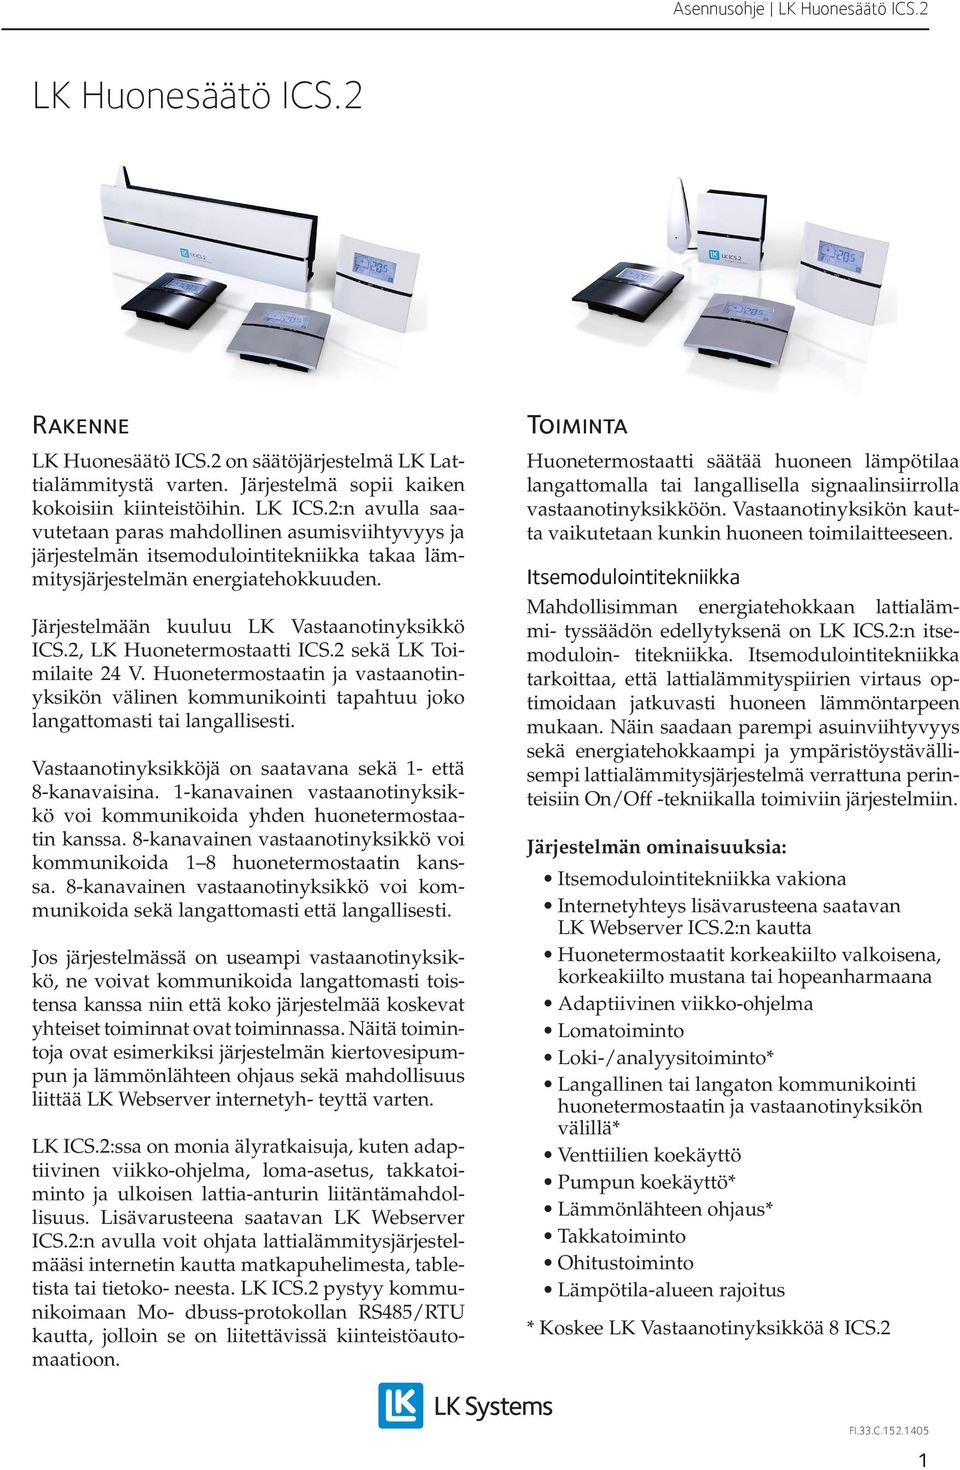 2, LK Huonetermostaatti ICS.2 sekä LK Toimilaite 24 V. Huonetermostaatin ja vastaanotinyksikön välinen kommunikointi tapahtuu joko langattomasti tai langallisesti.